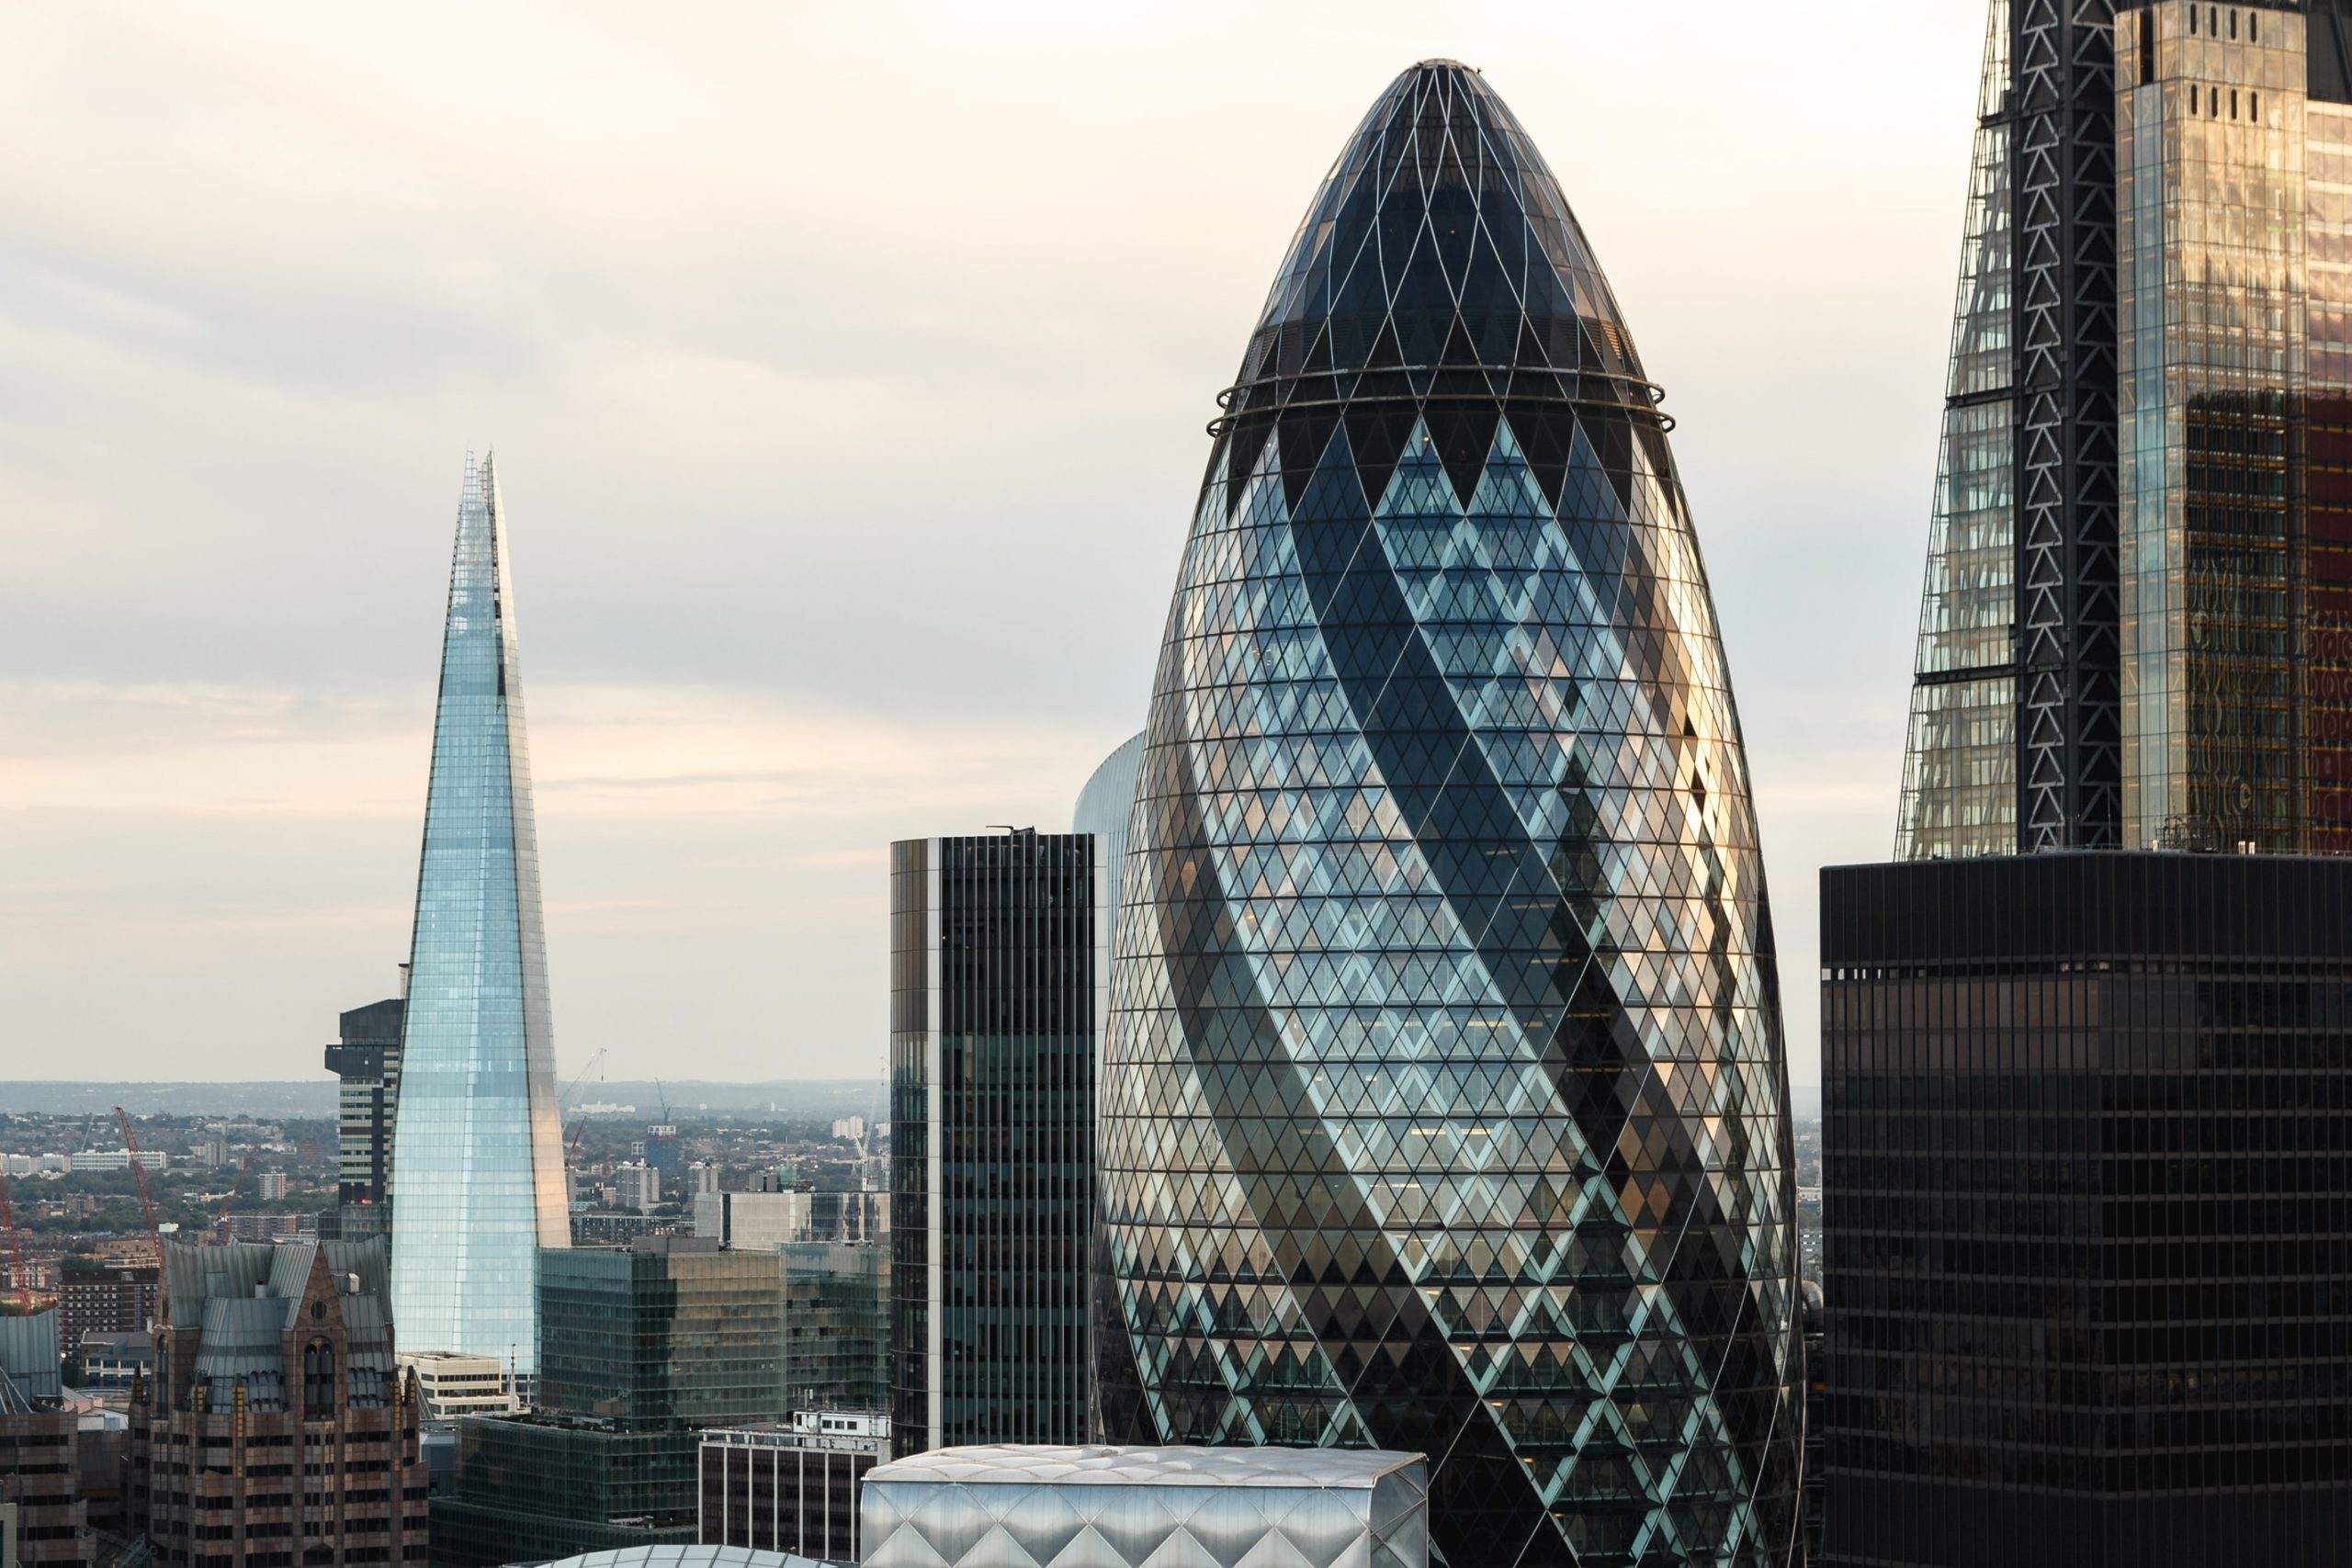 City of London - Notenbanken schuld an Gigantomanie